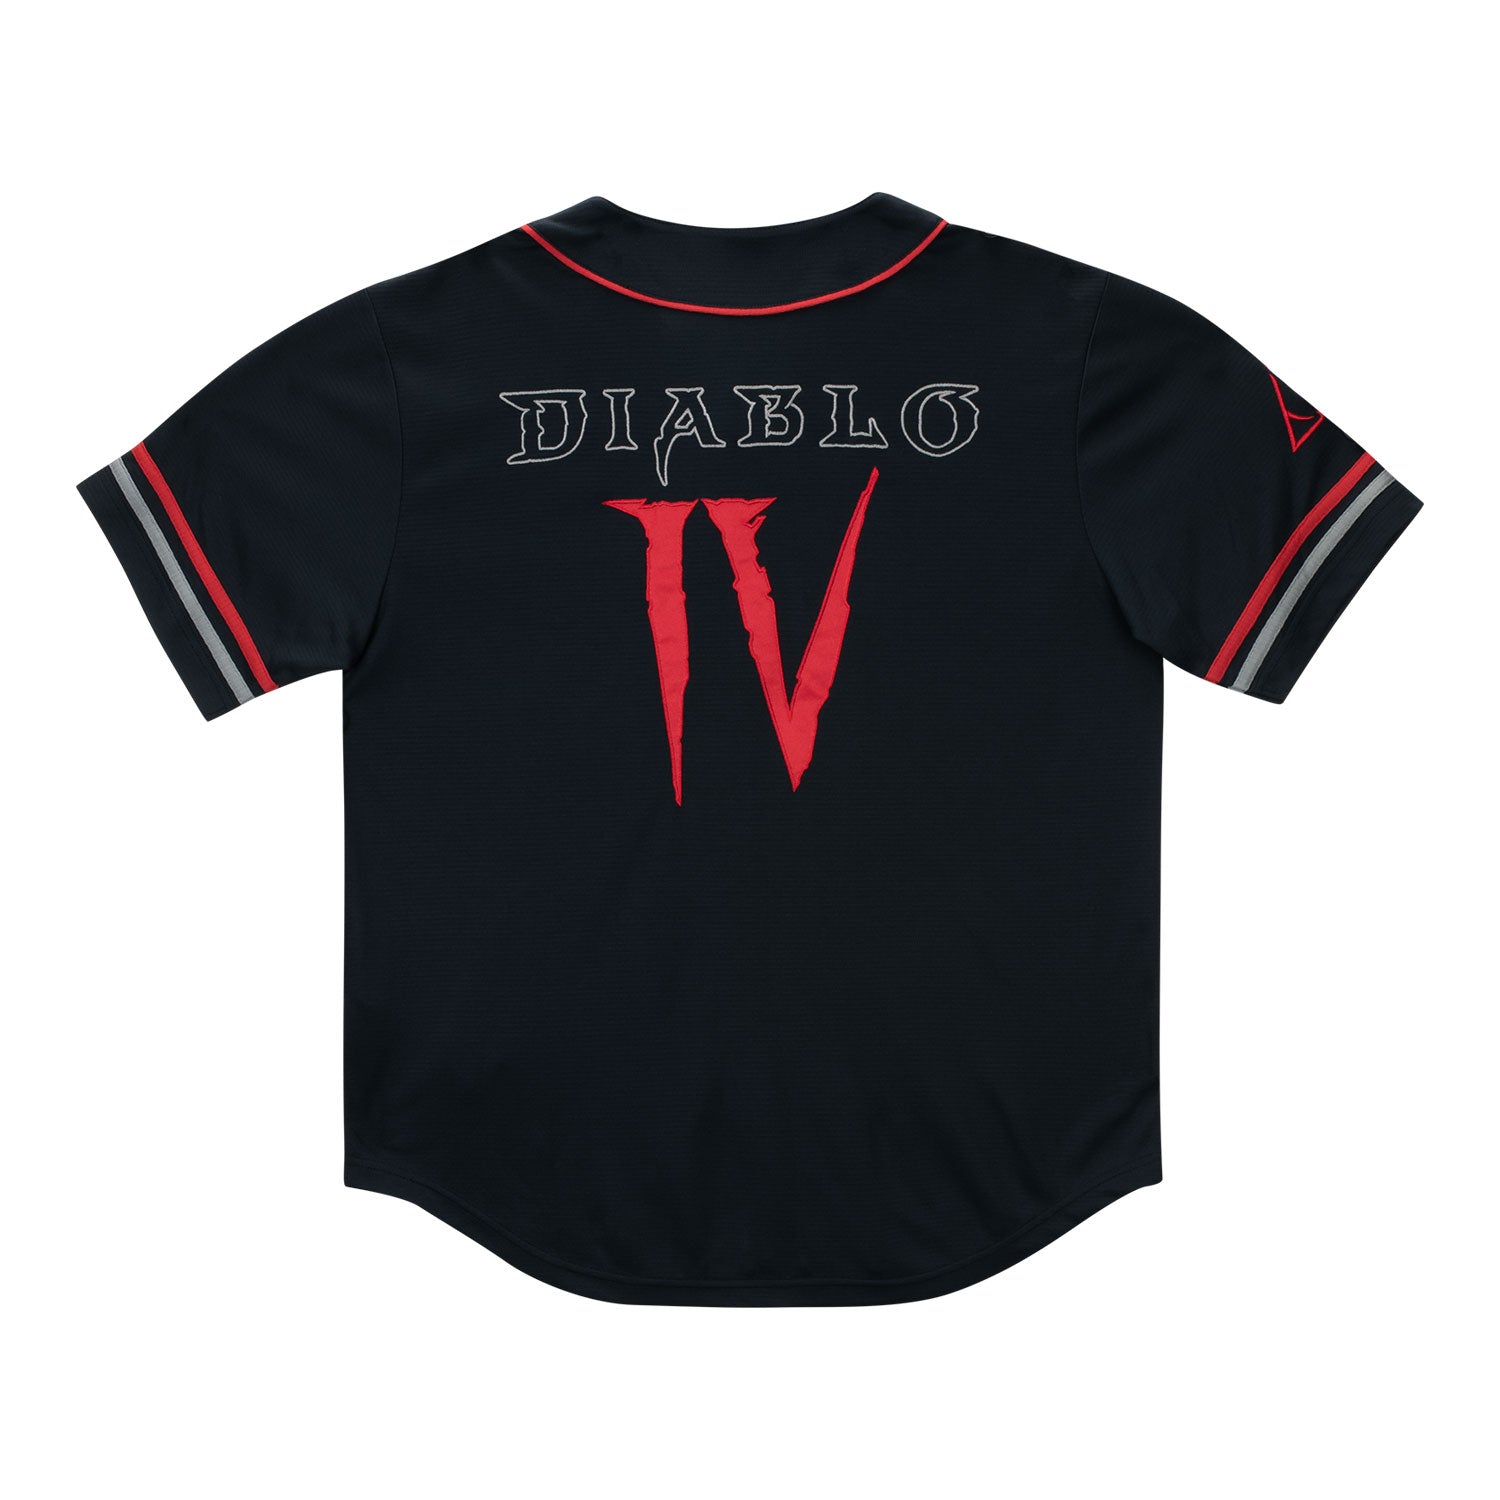 Diablo IV Black Baseball Jersey - Back View